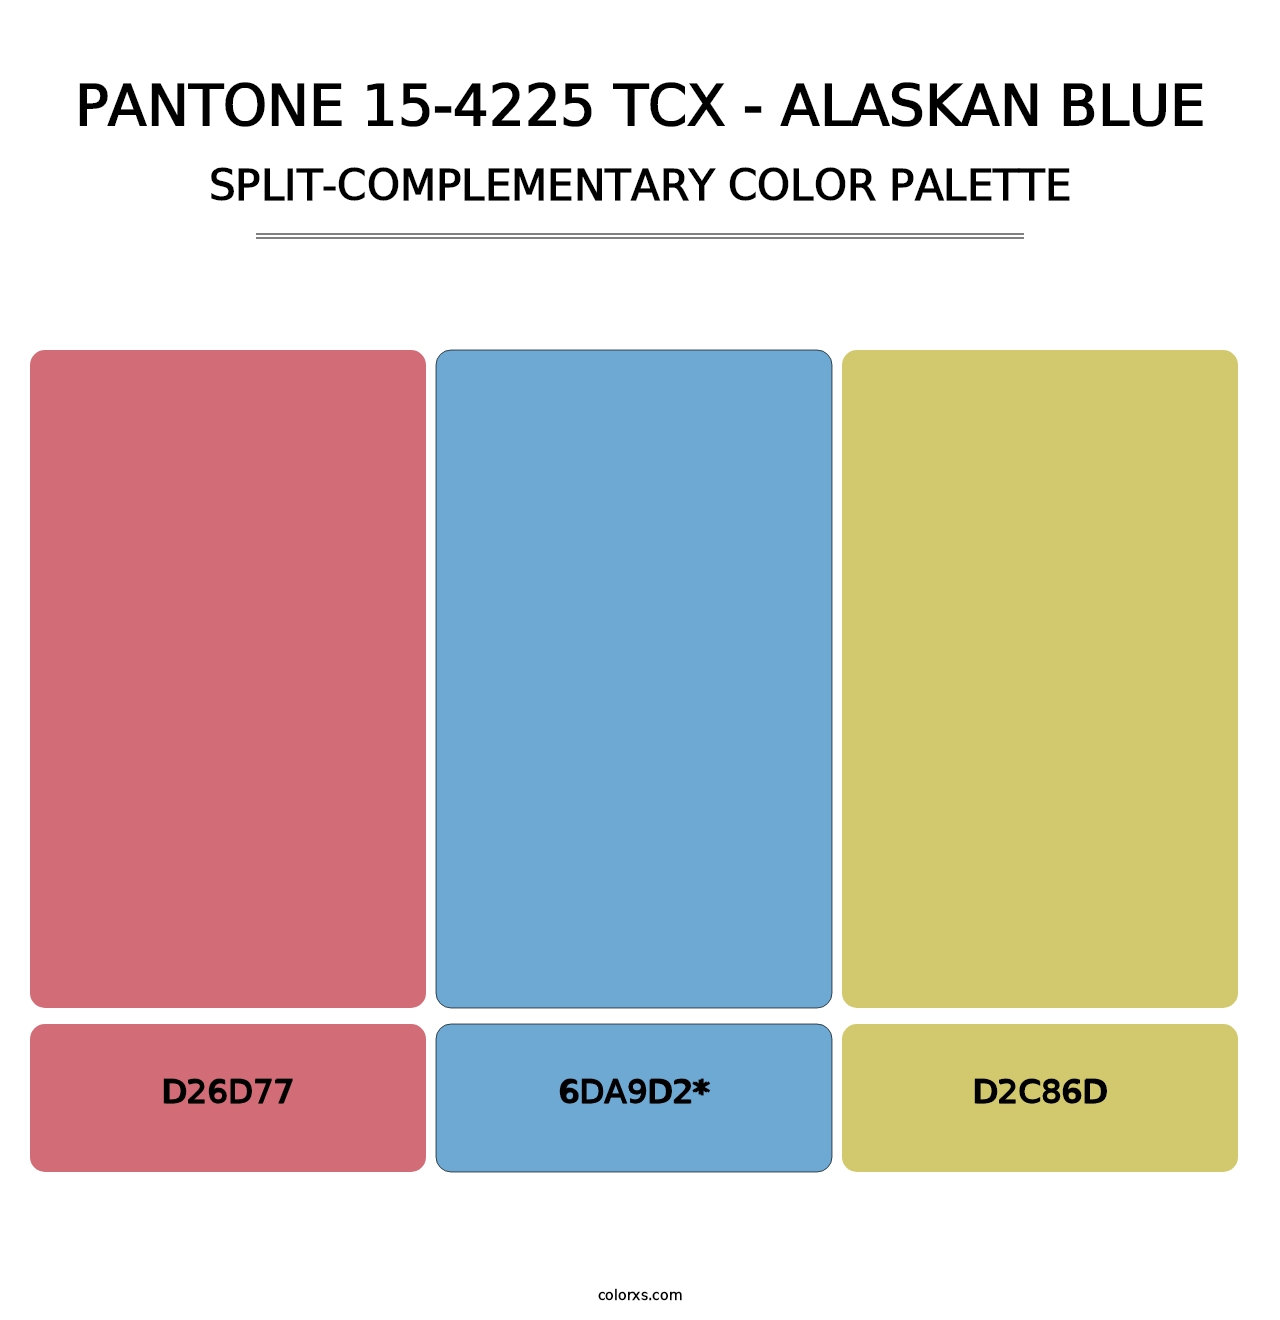 PANTONE 15-4225 TCX - Alaskan Blue - Split-Complementary Color Palette